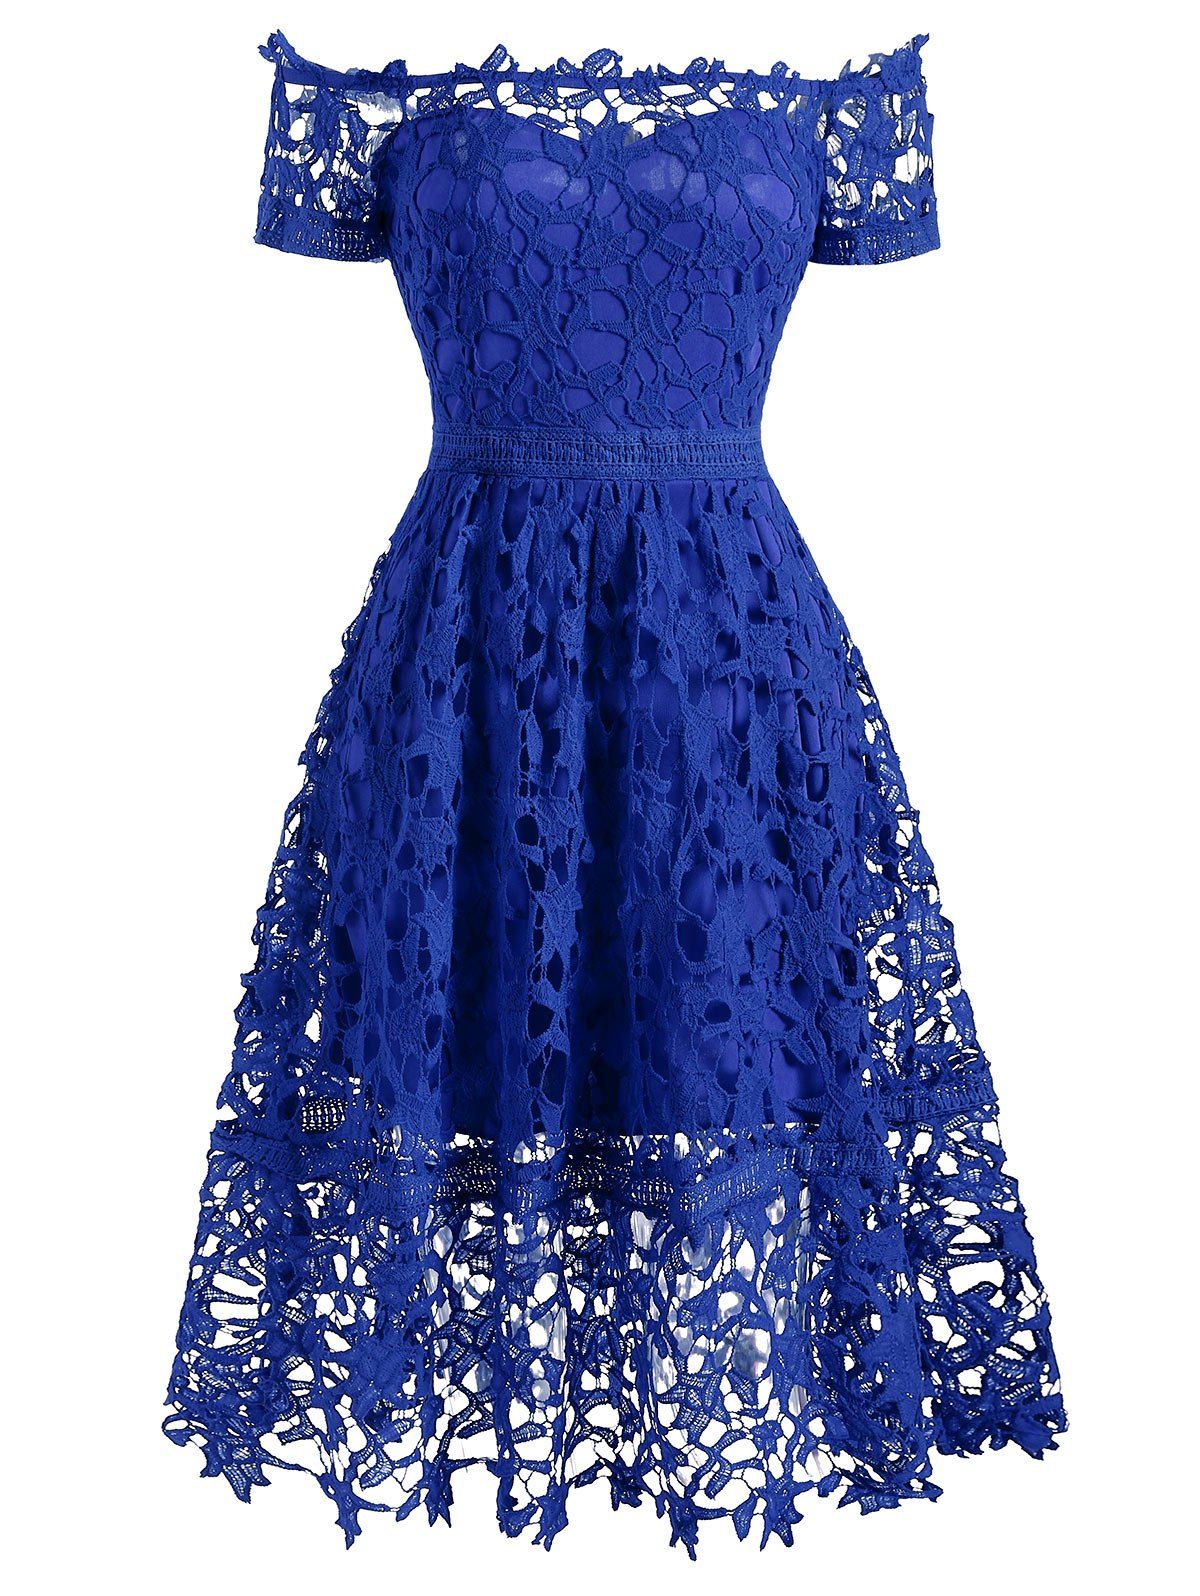 Off Shoulder Lace Party Dress - BLUE S